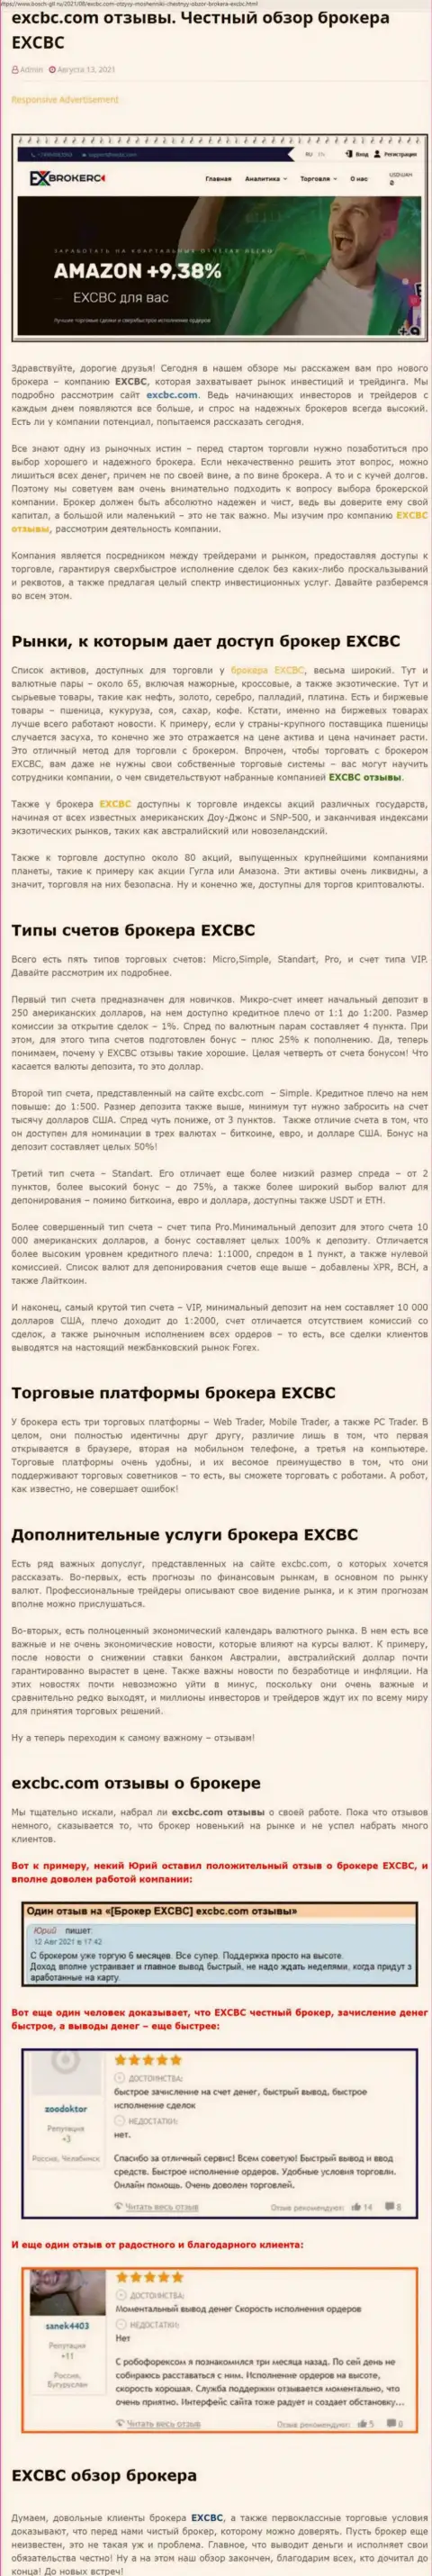 Достоверный обзор деятельности форекс дилингового центра ЕИкс Брокерс на веб-сайте bosch-gll ru